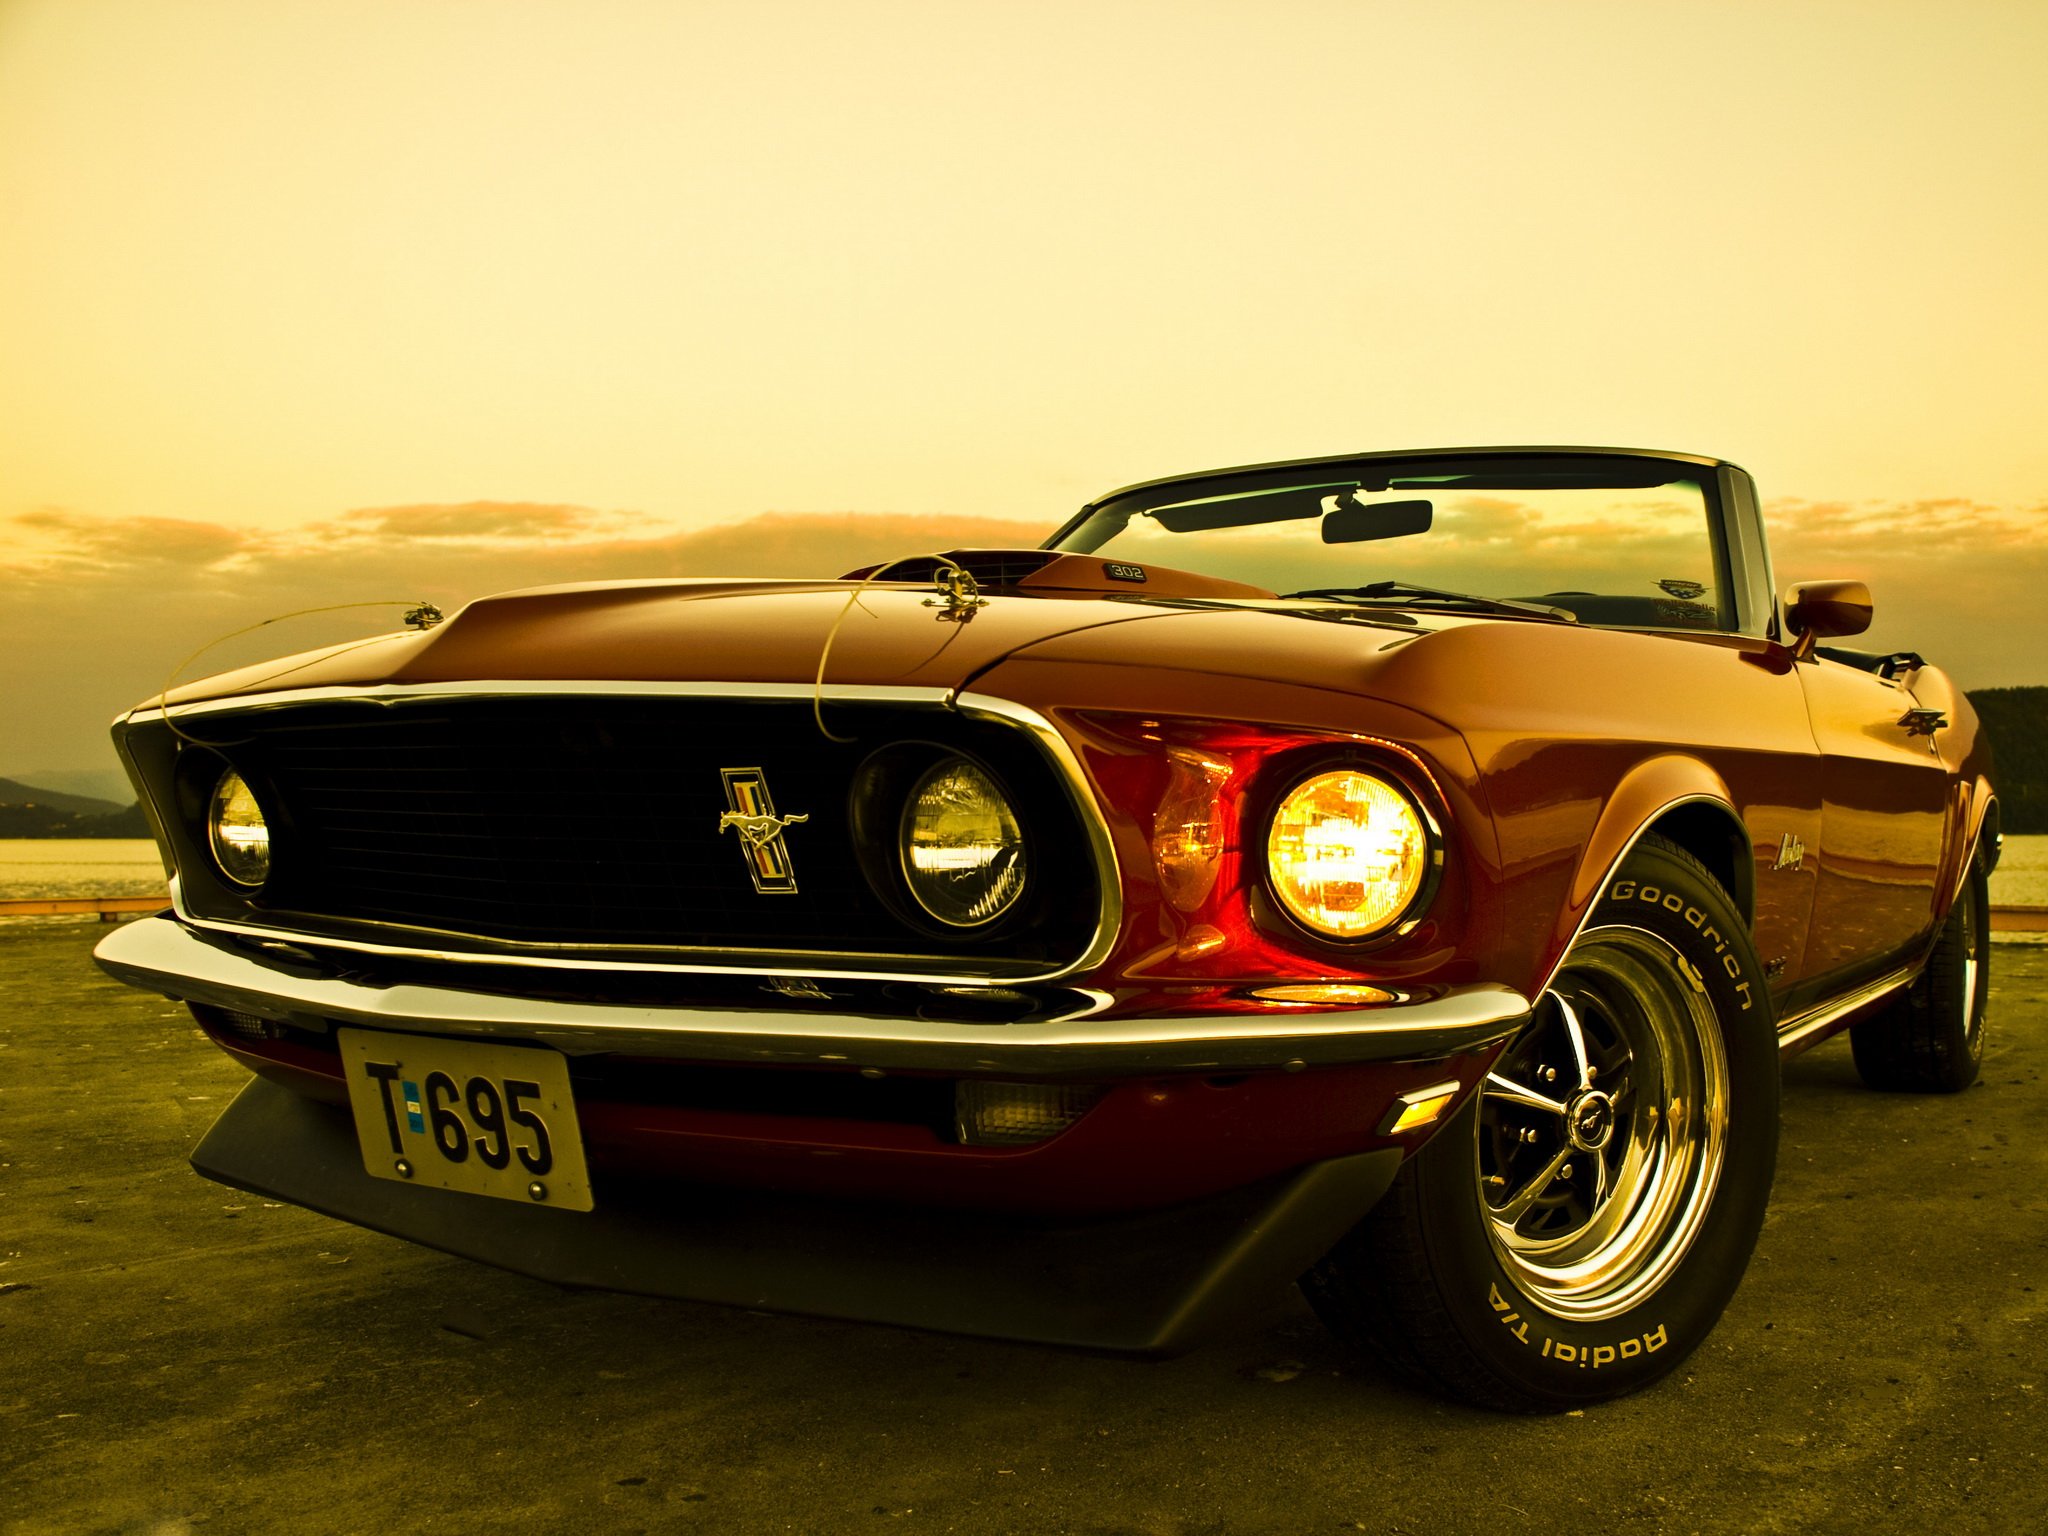 Classic Mustang Wallpaper Full HD #42t • Otomotif at ngepLuk.com